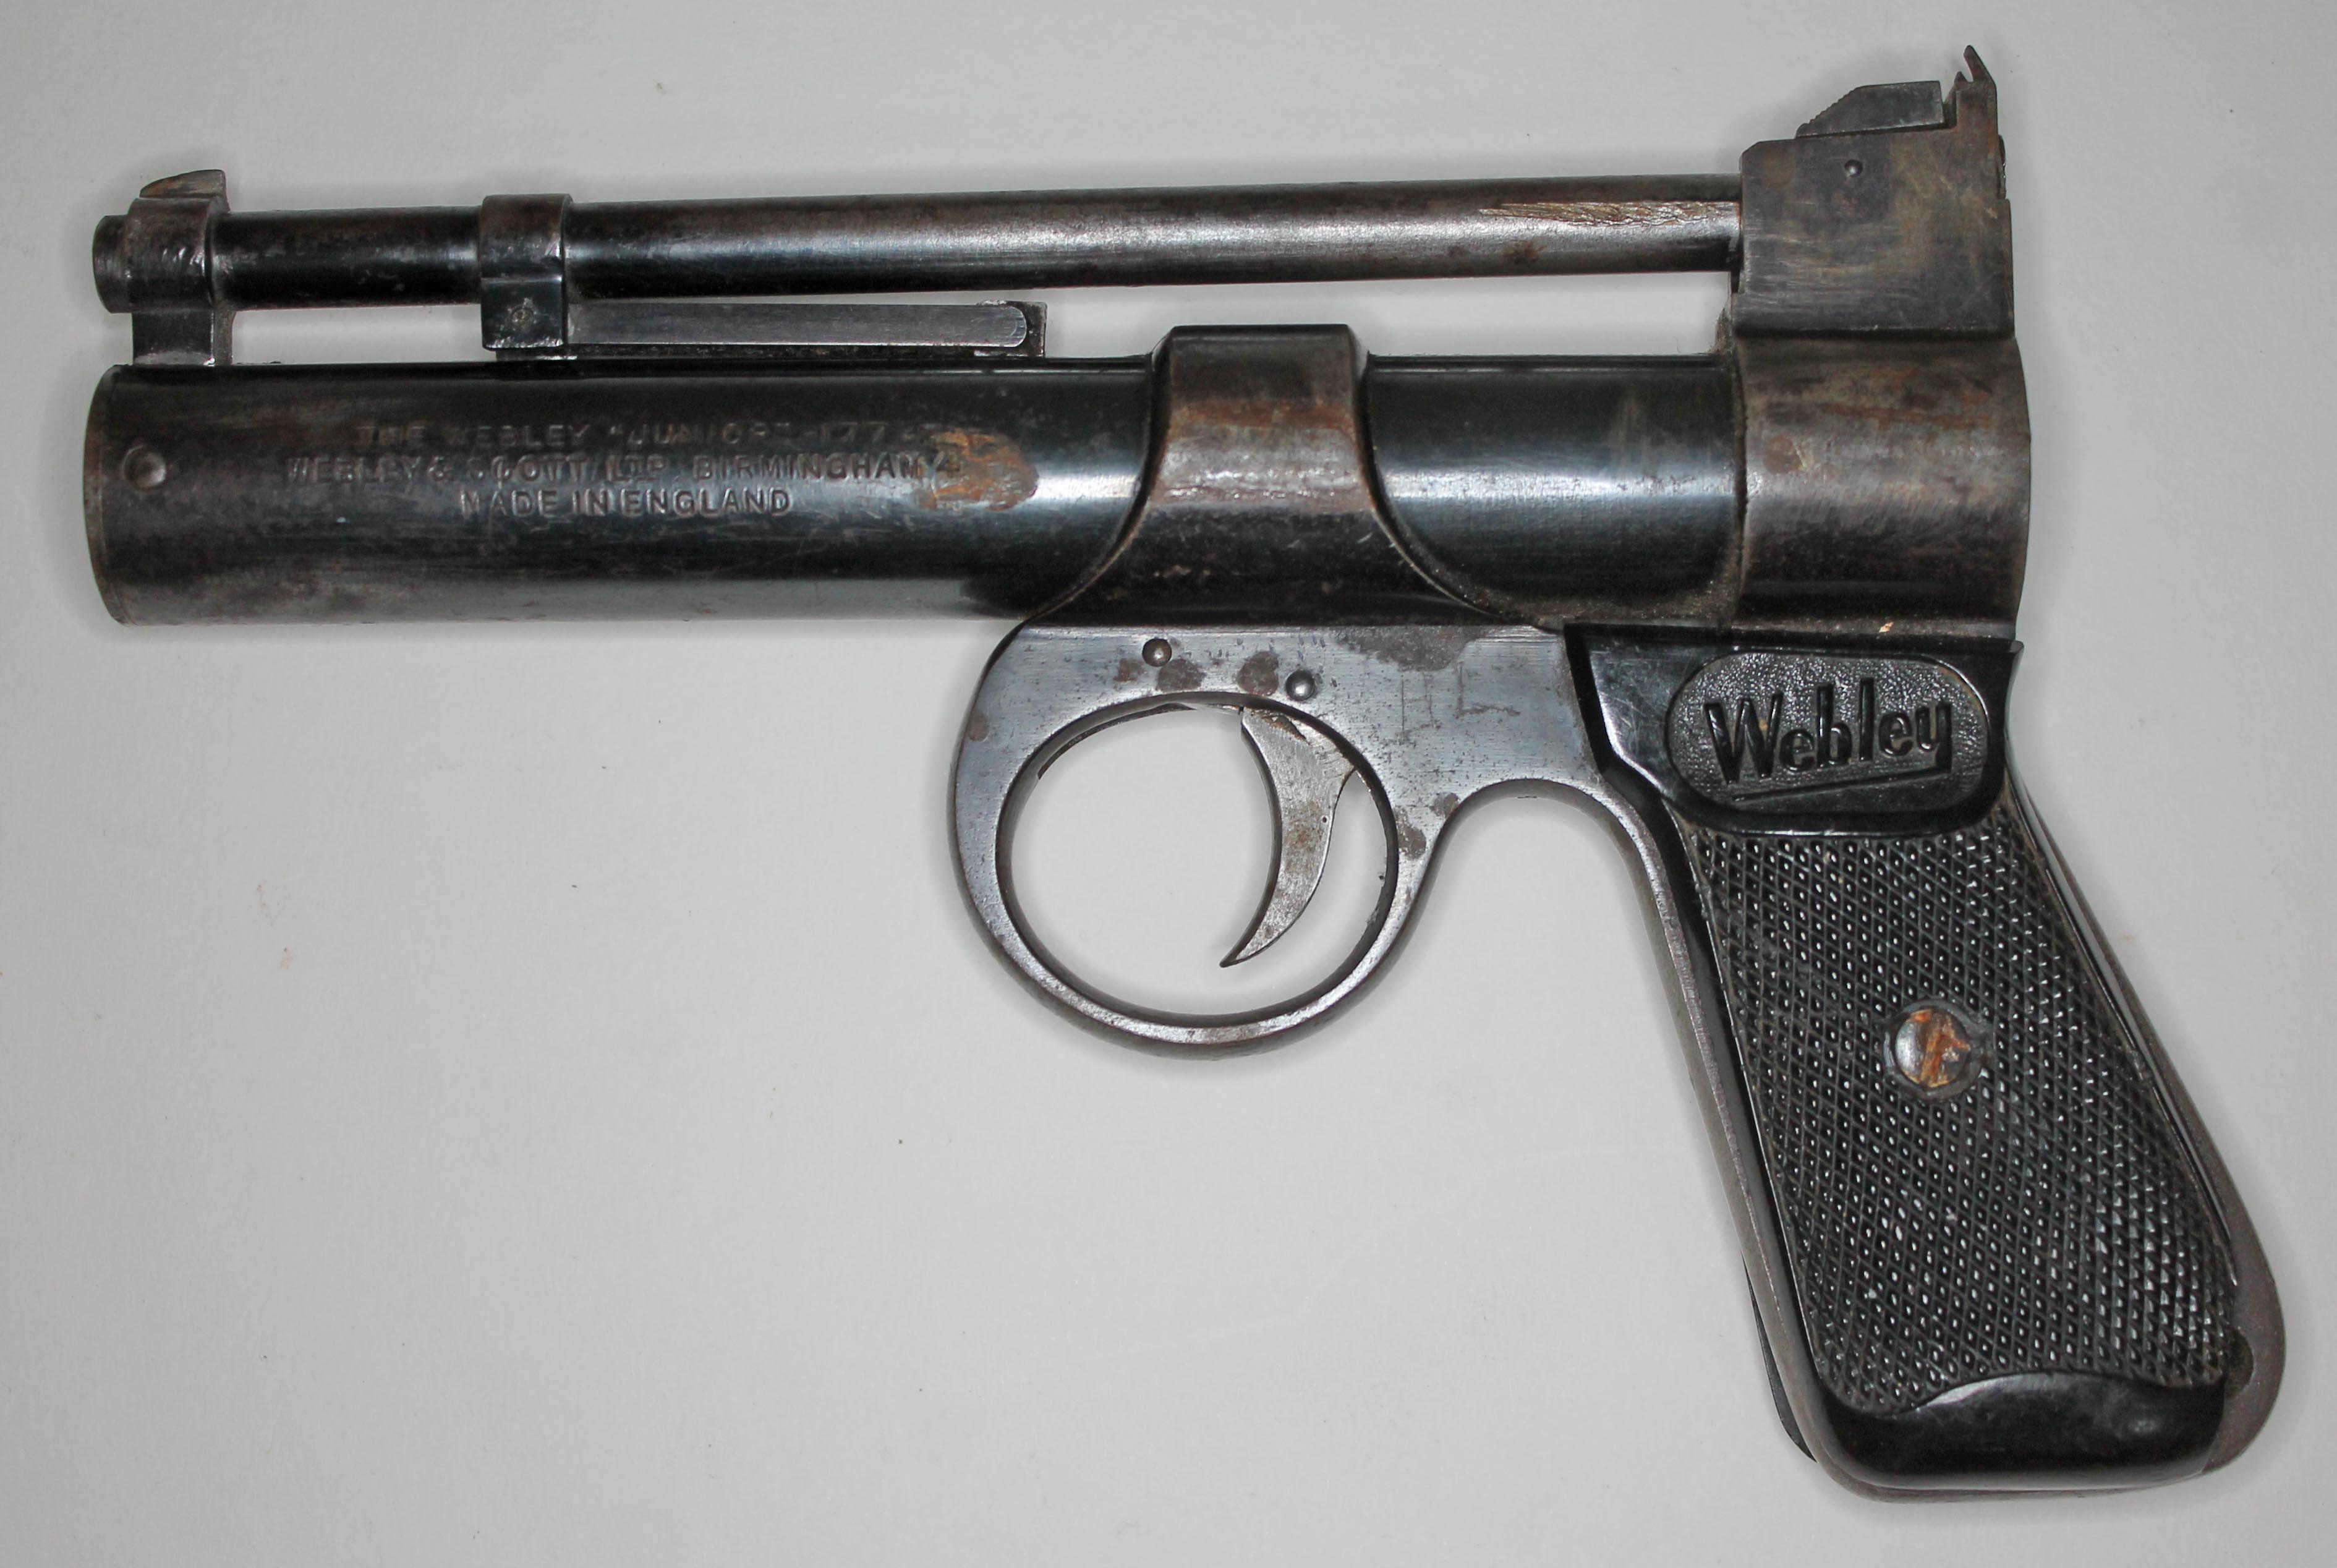 A Webley Junior .177 air pistol.